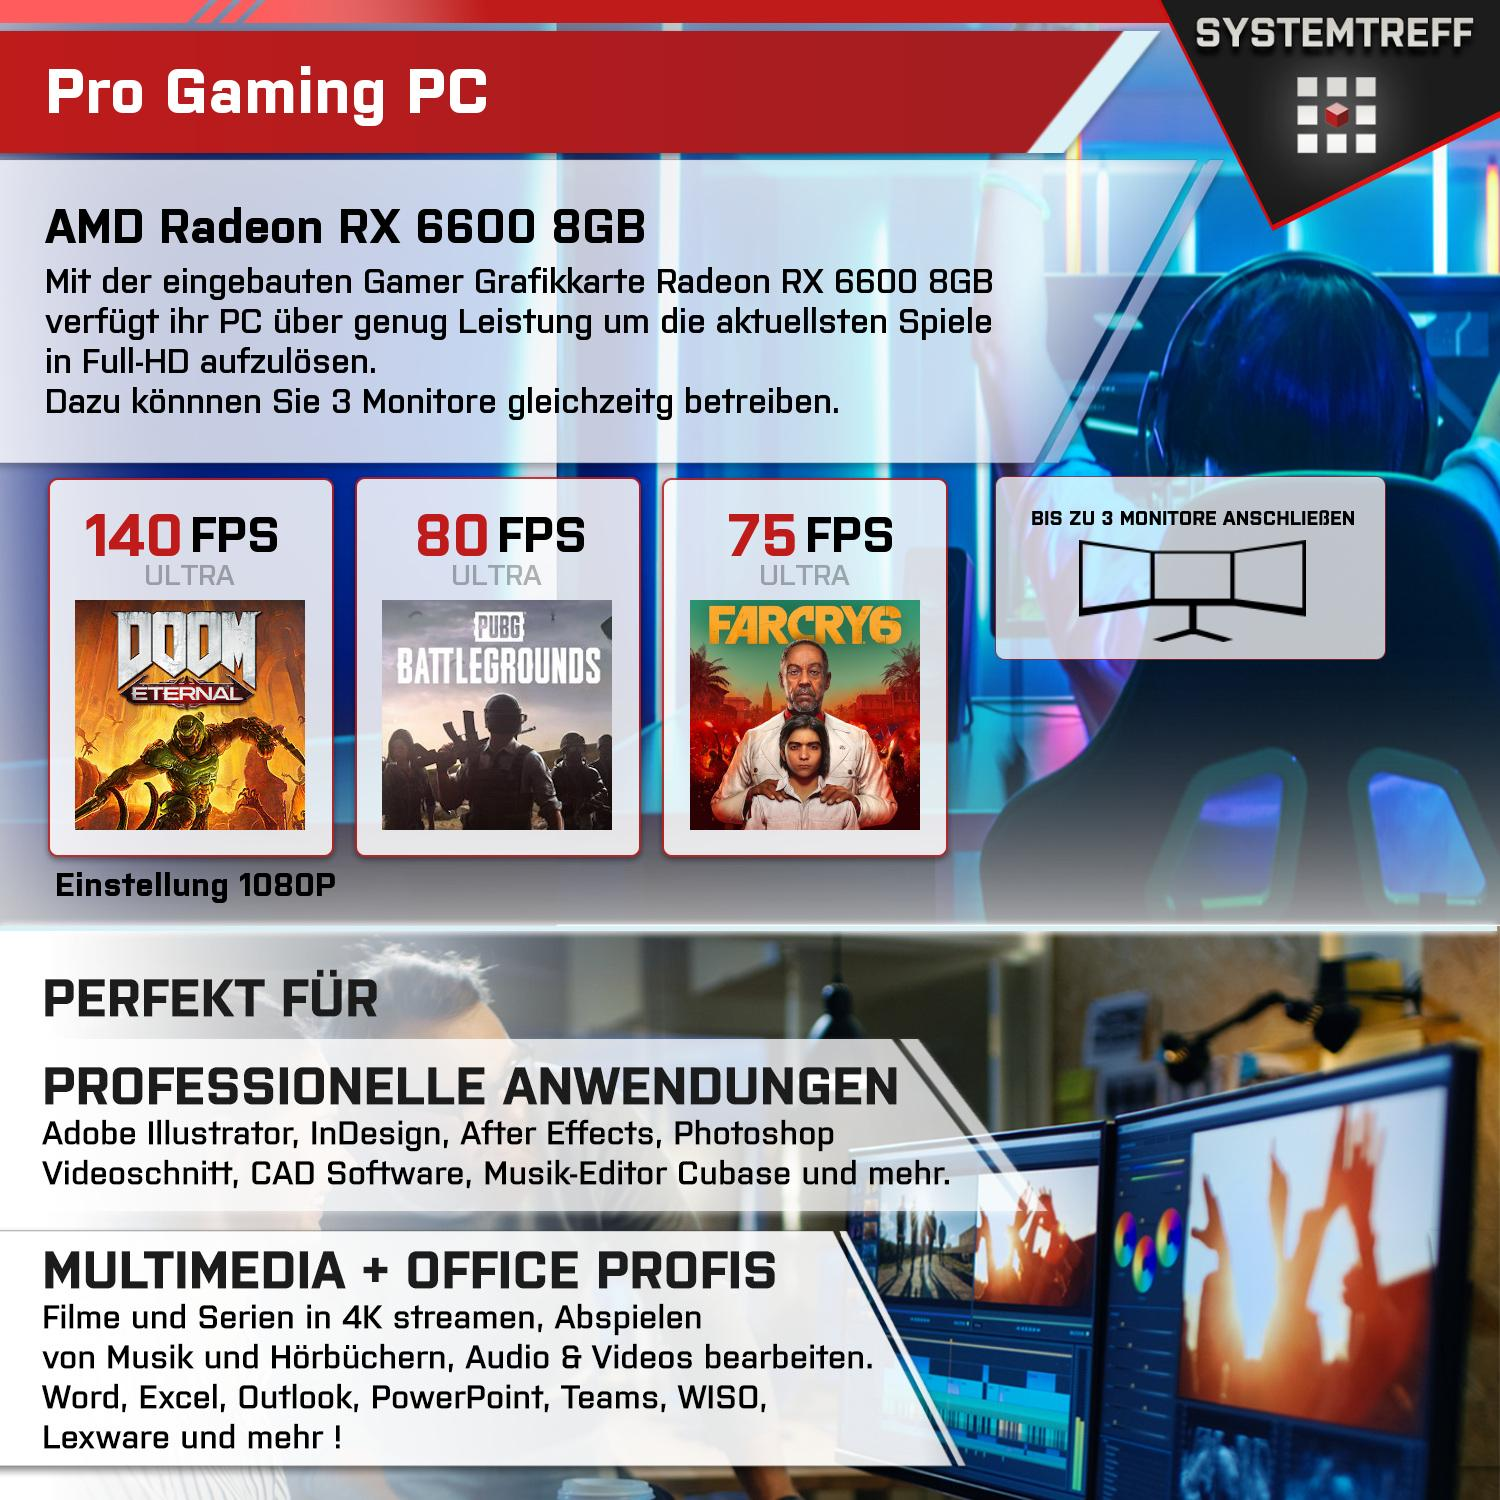 SYSTEMTREFF Gaming Komplett AMD Komplett PC AMD 4100, 4100 RAM, RX 16 8 Radeon GB 512 mit mSSD, Prozessor, 8GB GDDR6, 6600 3 GB Ryzen GB